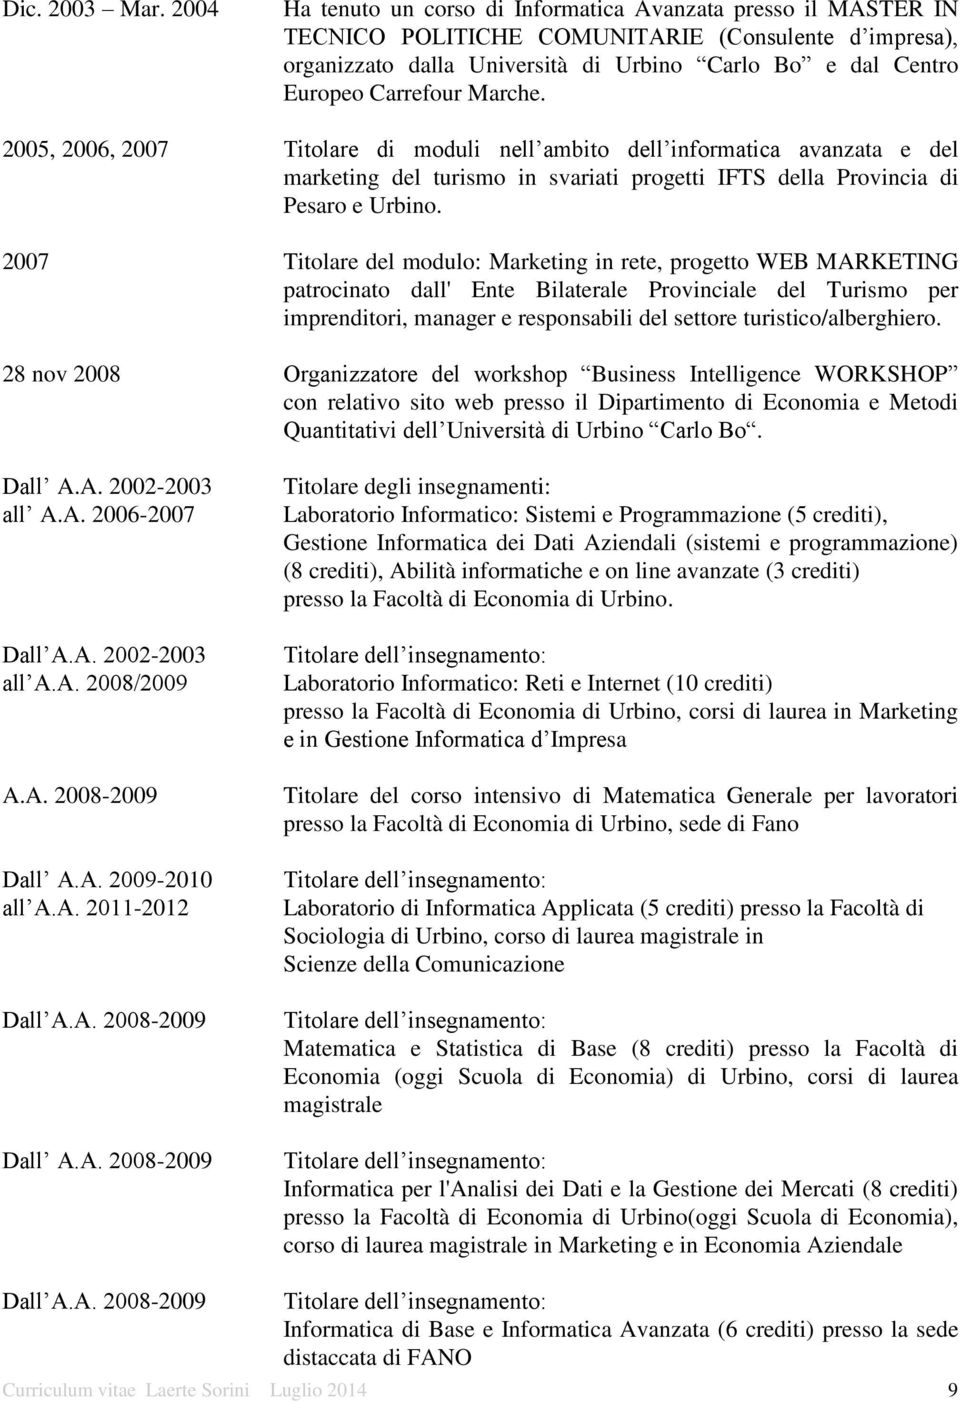 Carrefour Marche. 2005, 2006, 2007 Titolare di moduli nell ambito dell informatica avanzata e del marketing del turismo in svariati progetti IFTS della Provincia di Pesaro e Urbino.